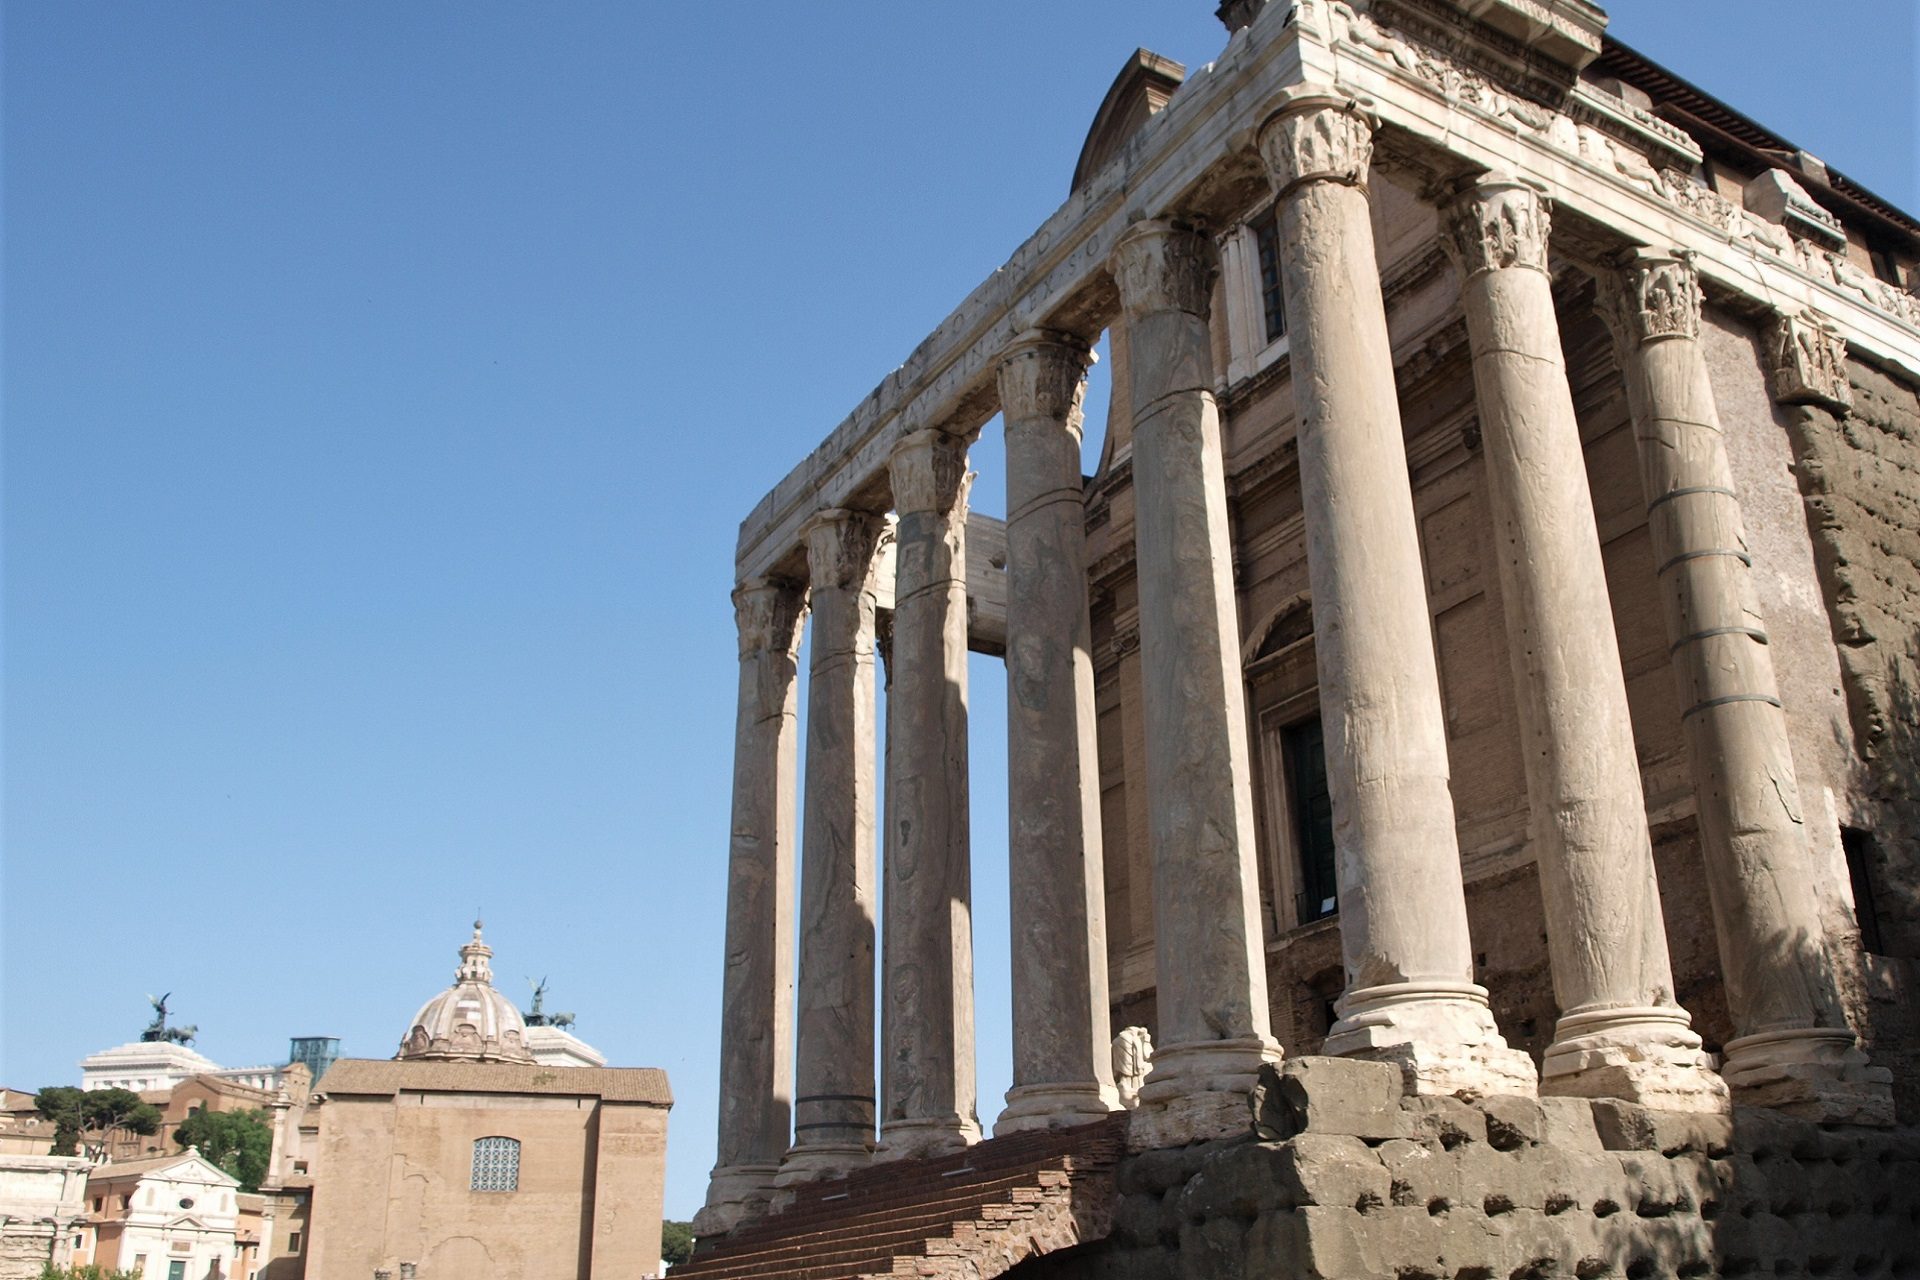 Fasada i kolumnada pozostałe po starożytnej świątyni na Forum Romanum w Rzymie